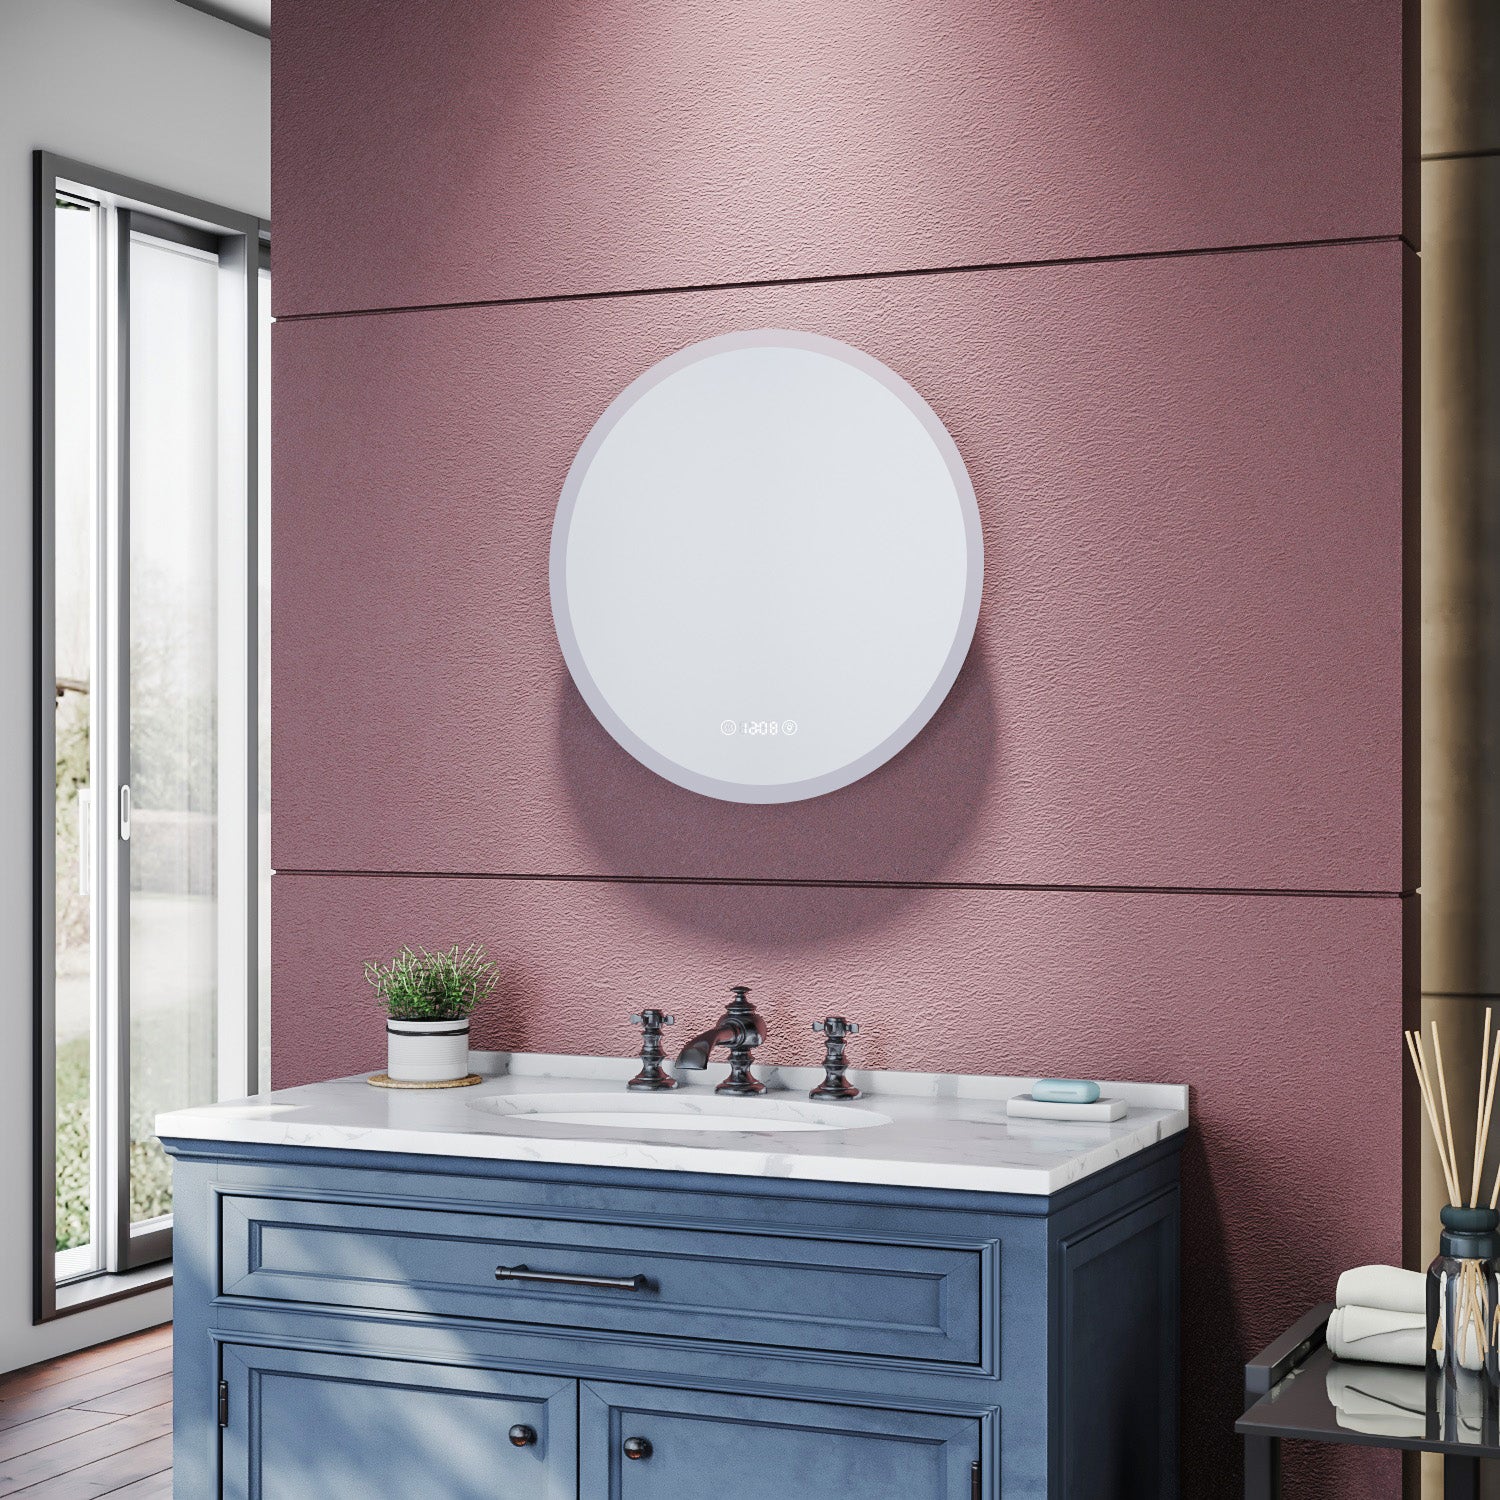 SIRHONA Miroir de salle de bains 600 x 600 x 35mm - Miroirs cosmétiques muraux - Miroir avec led illumination - Trois températures de couleur - Anti-poussière et antibuée - SIRHONA